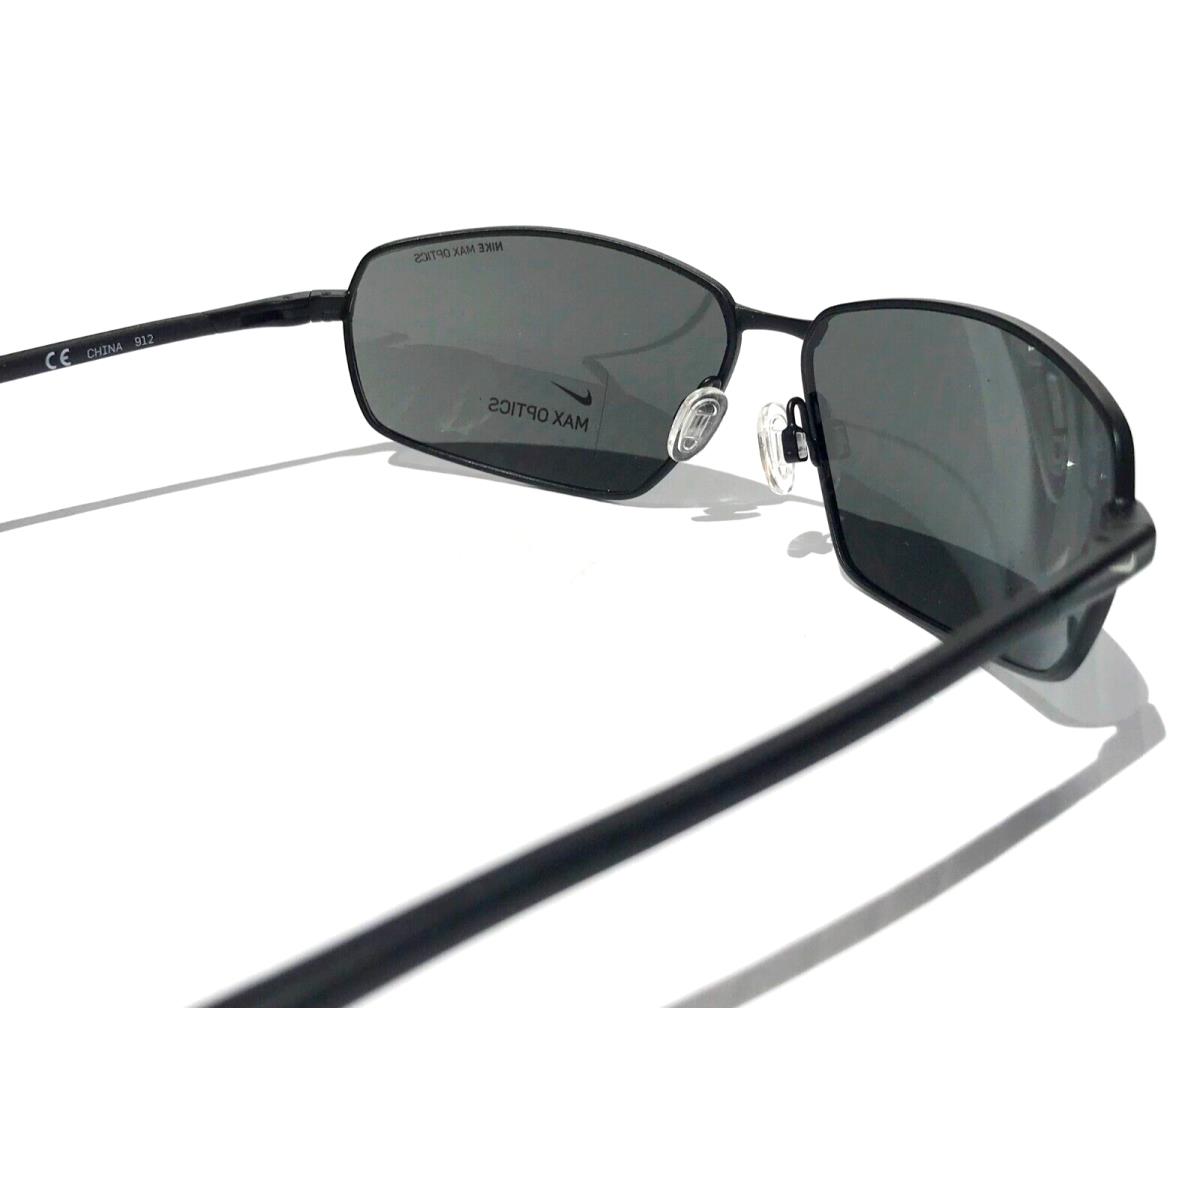 Nike sunglasses Pivot - Frame: Black, Lens: Black